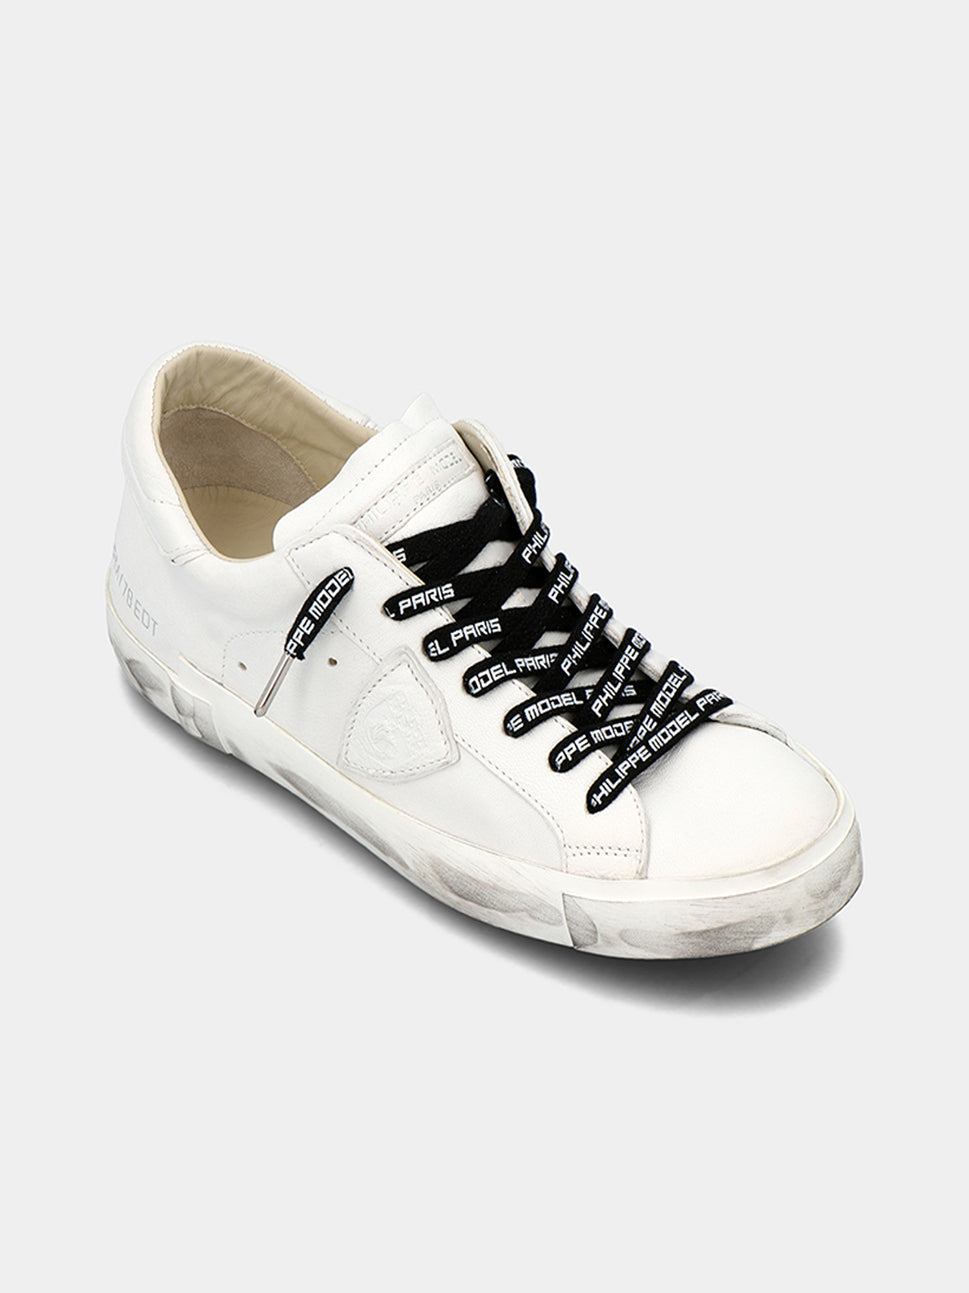 philippe-model-laces-man-lacus001-noir-blanc